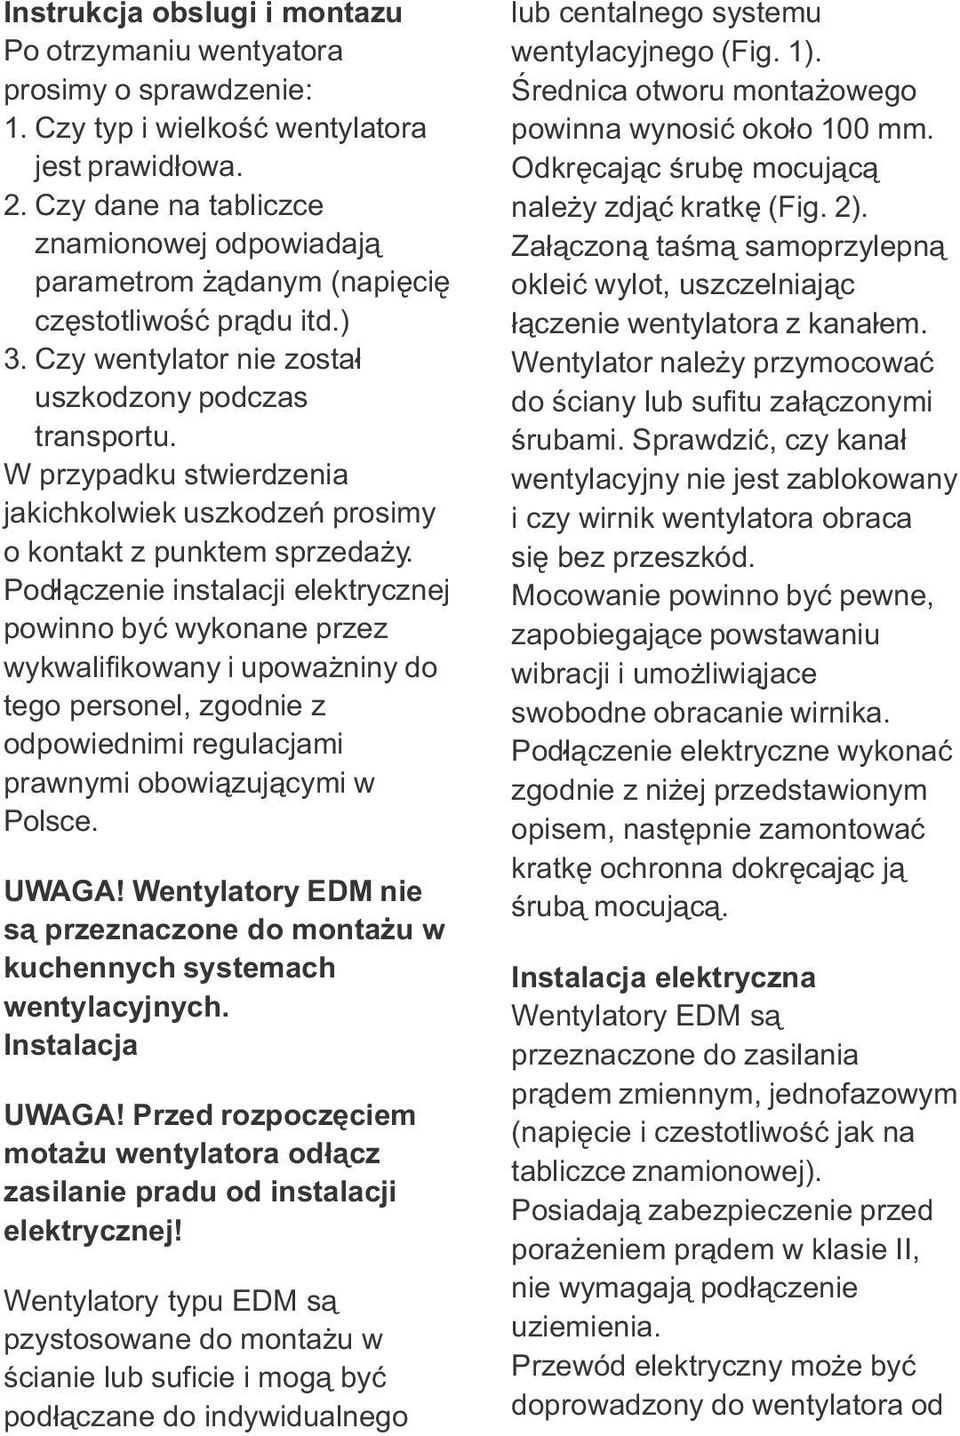 instalacji elektrycznej powinno byc wykonane przez wykwalifikowany i upowazniny do tego personel, zgodnie z odpowiednimi regulacjami prawnymi obowiazujacymi w Polsce UWAGA!